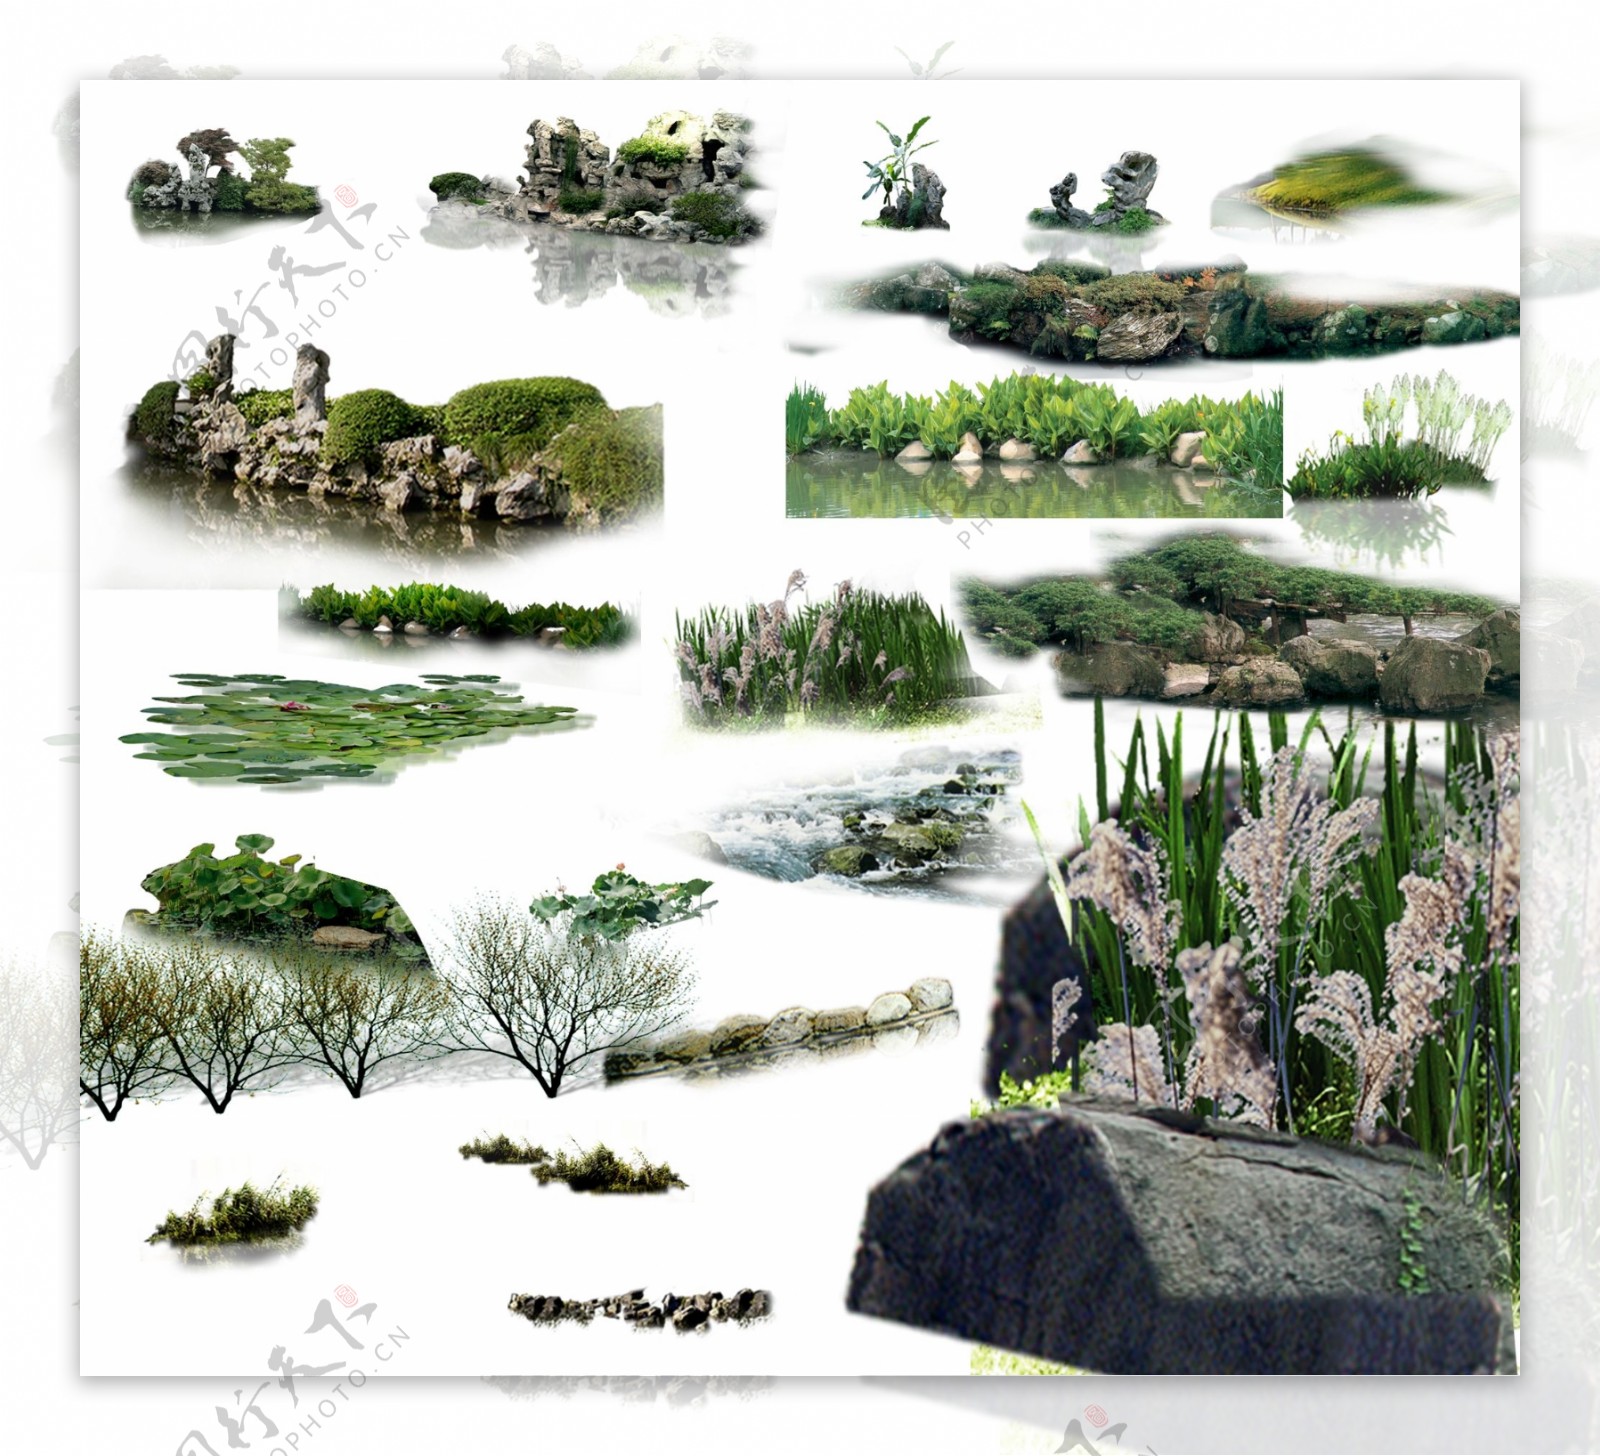 水景景观效果图psd素材图片